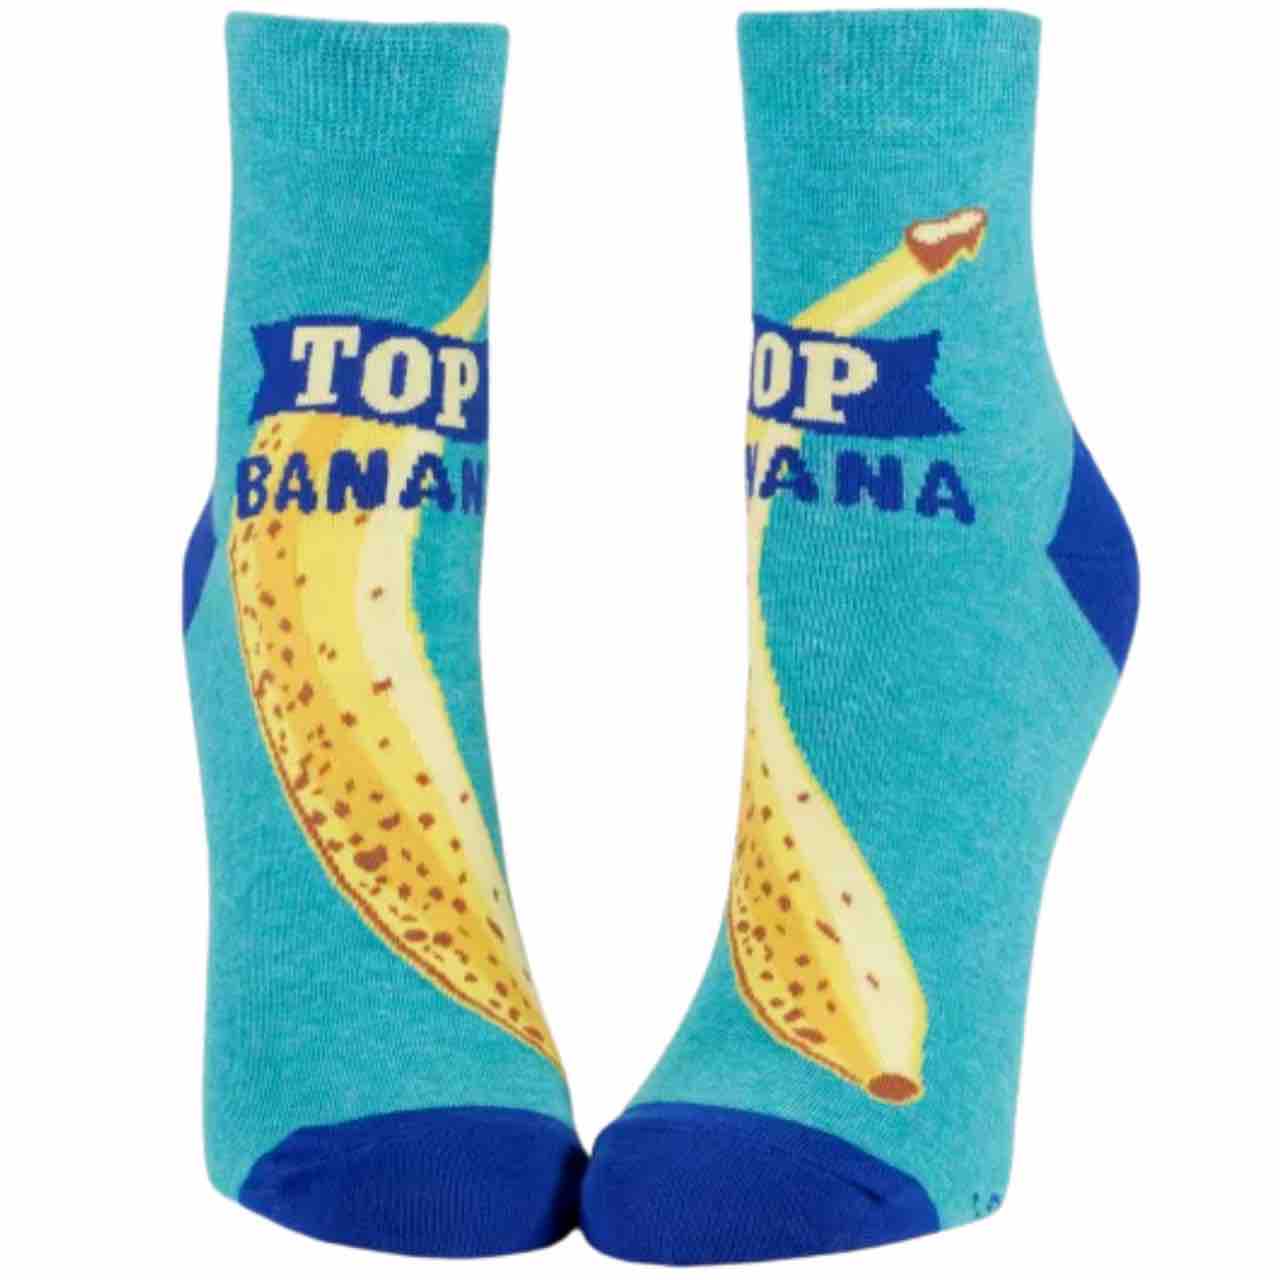 Blue Q Women\'s Ankle Socks | Top Banana